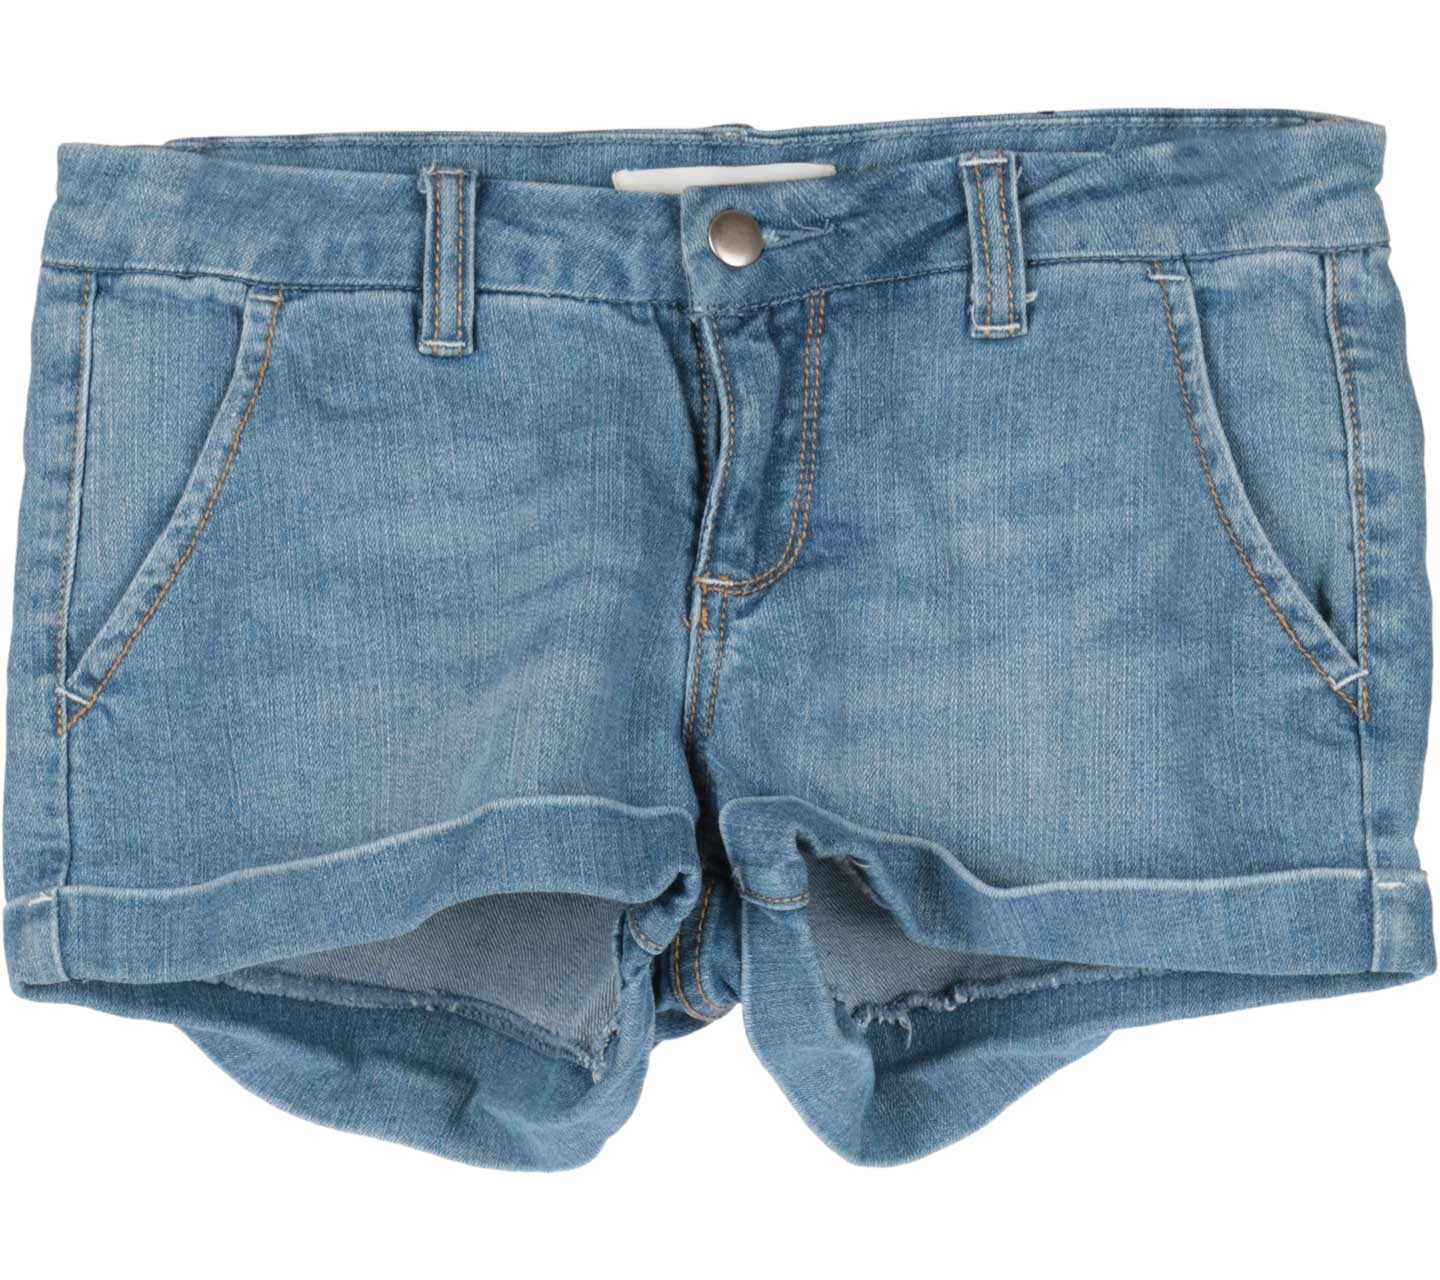 2.1 Denim Blue Denim Short Pants